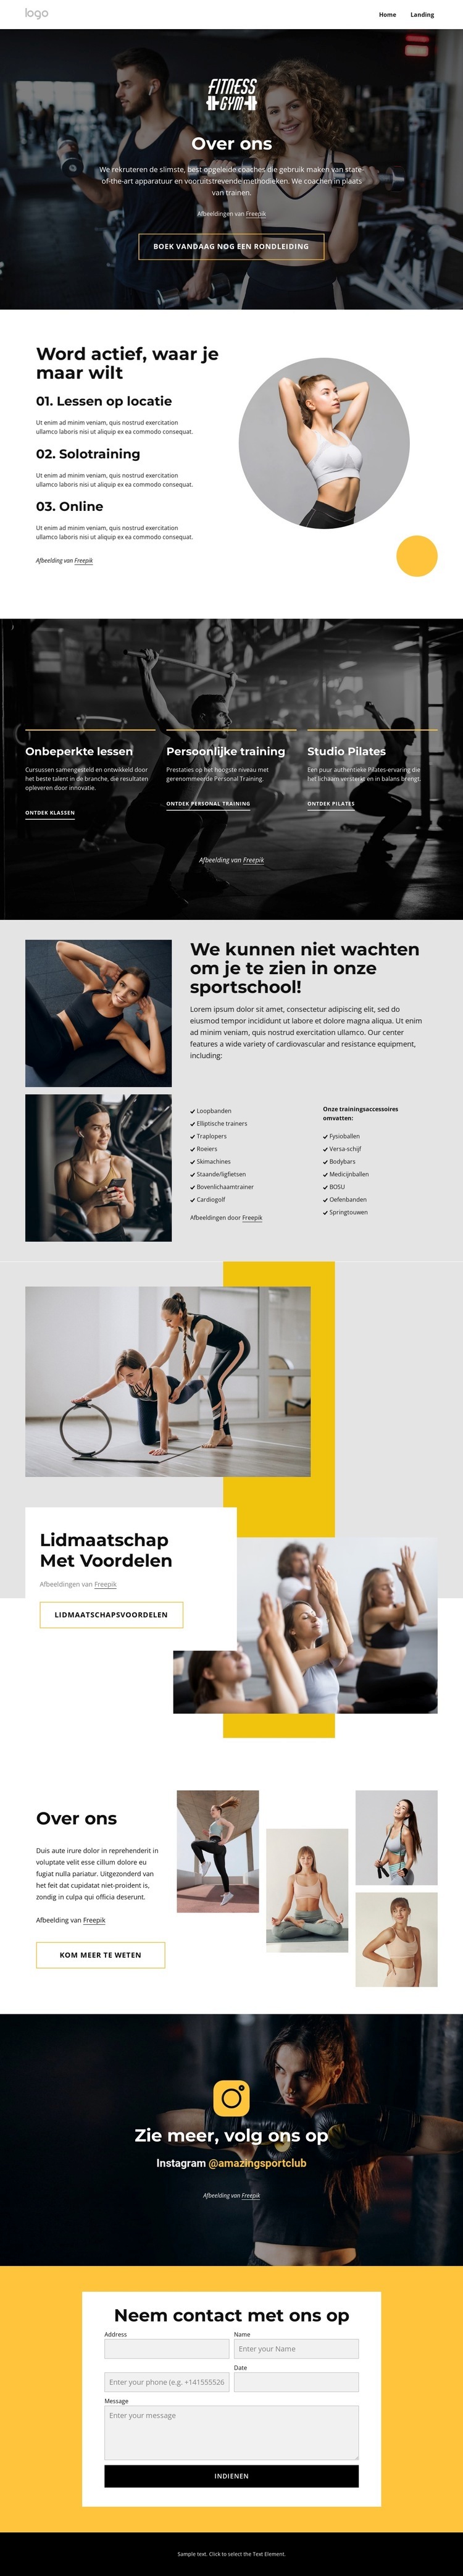 Sport- en wellnesscentrum Website ontwerp